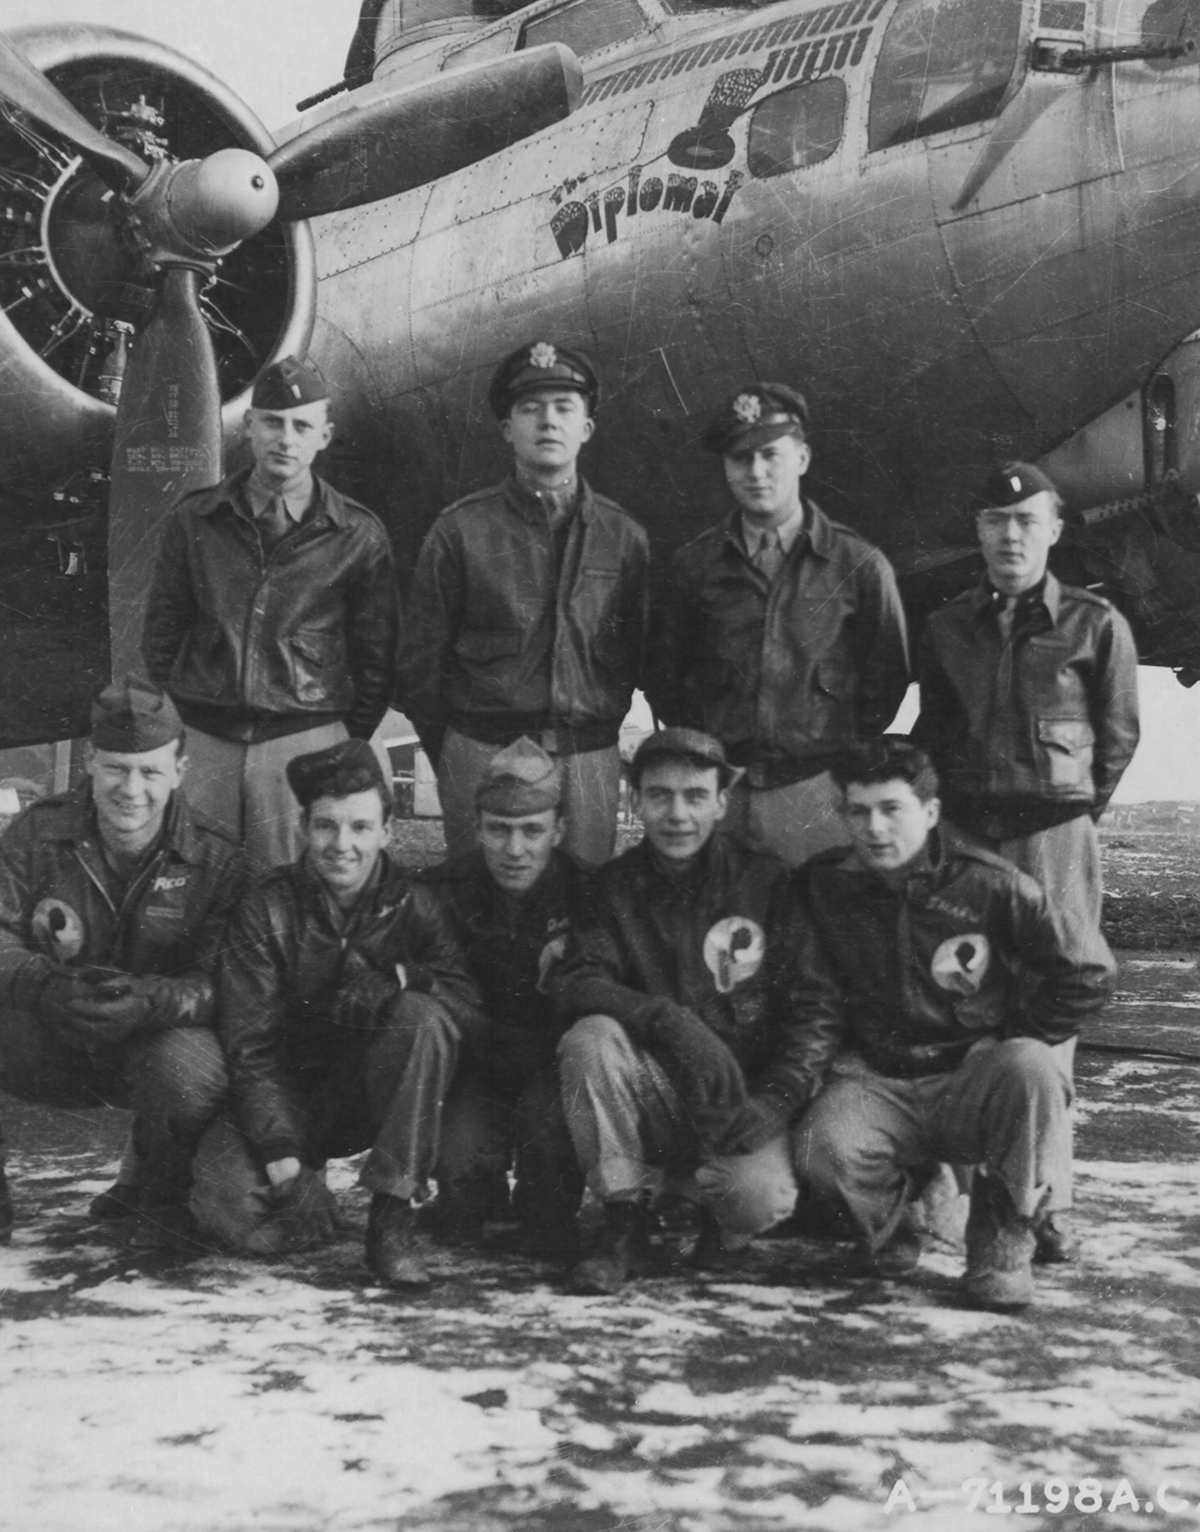 B-17 #42-102967 / The Diplomat